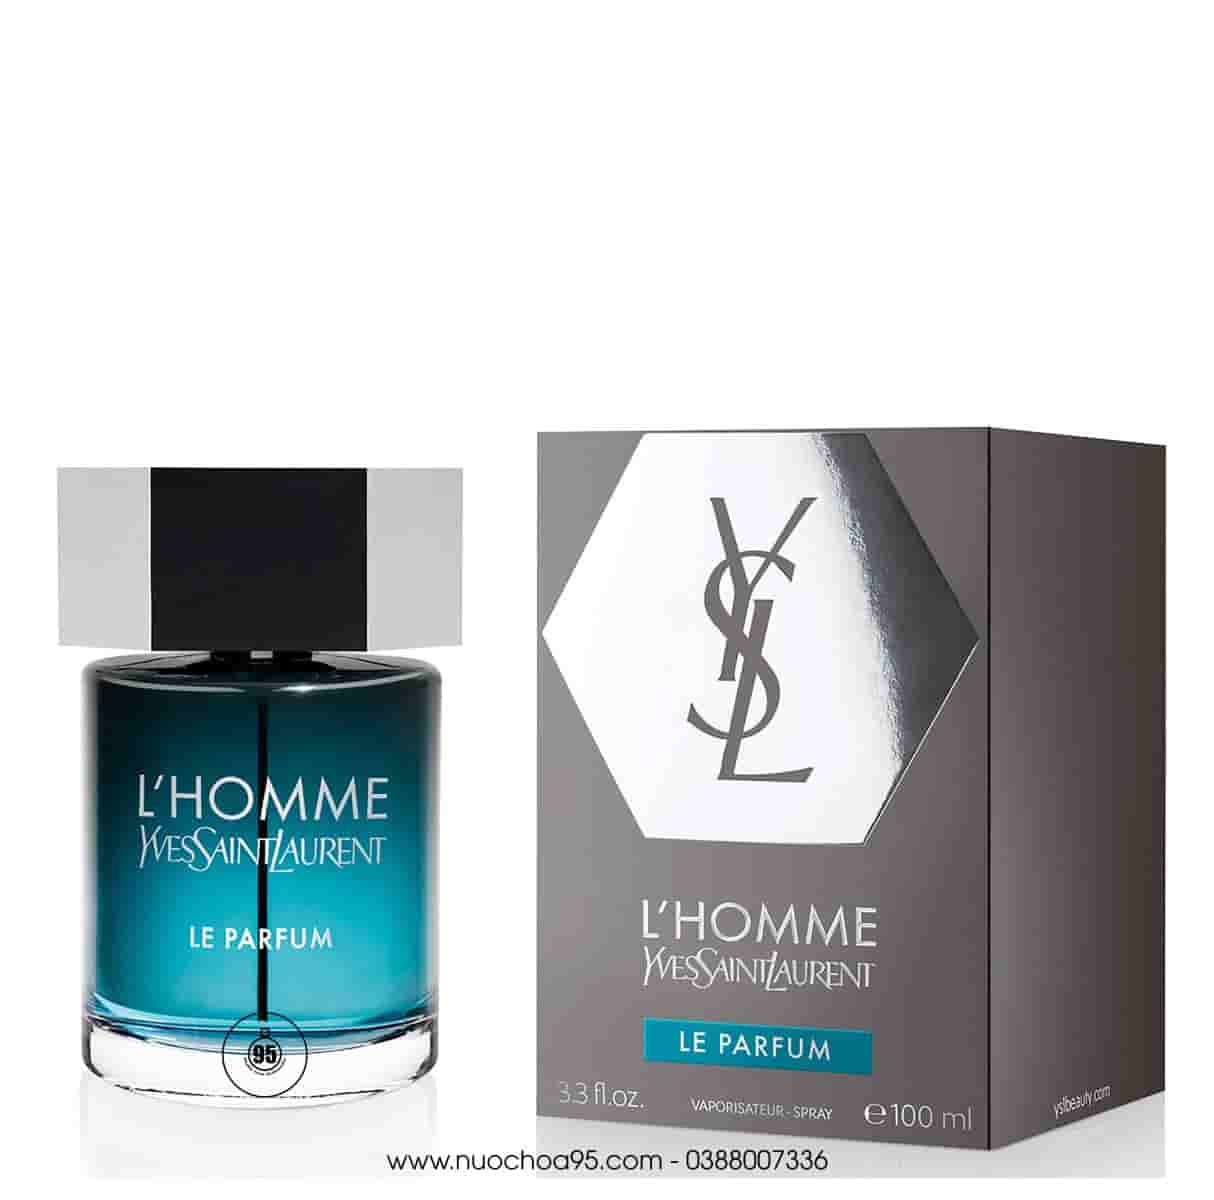 Nước hoa Yves Saint Laurent L'Homme Le Parfum